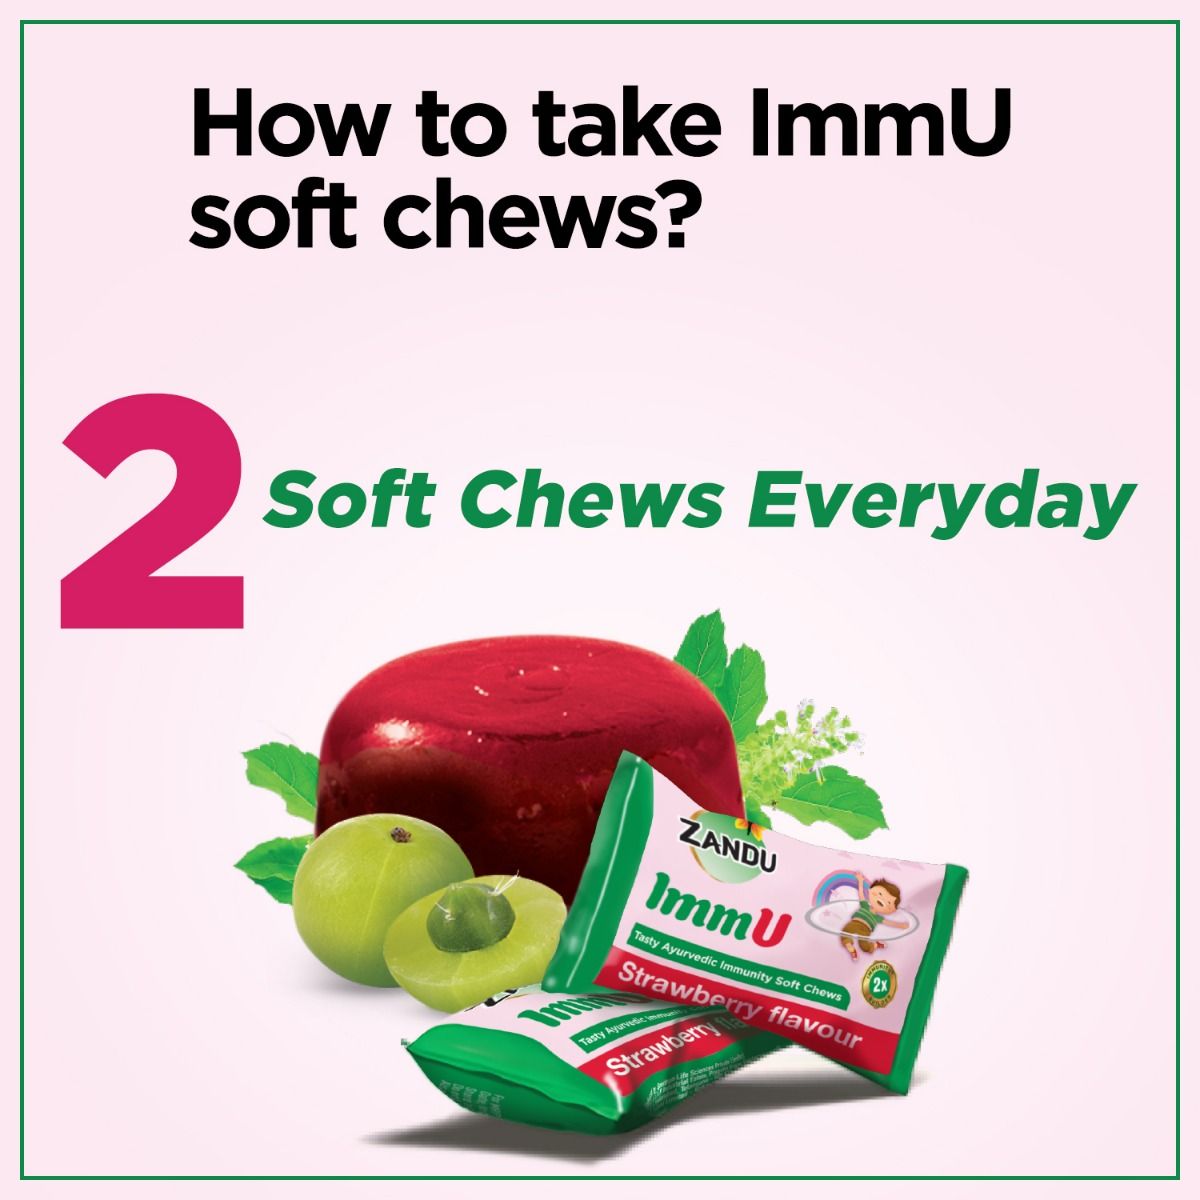 Zandu ImmU Tasty Ayurvedic Immunity Soft Chews Strawberry Flavour Jellies, 84 gm, Pack of 1 